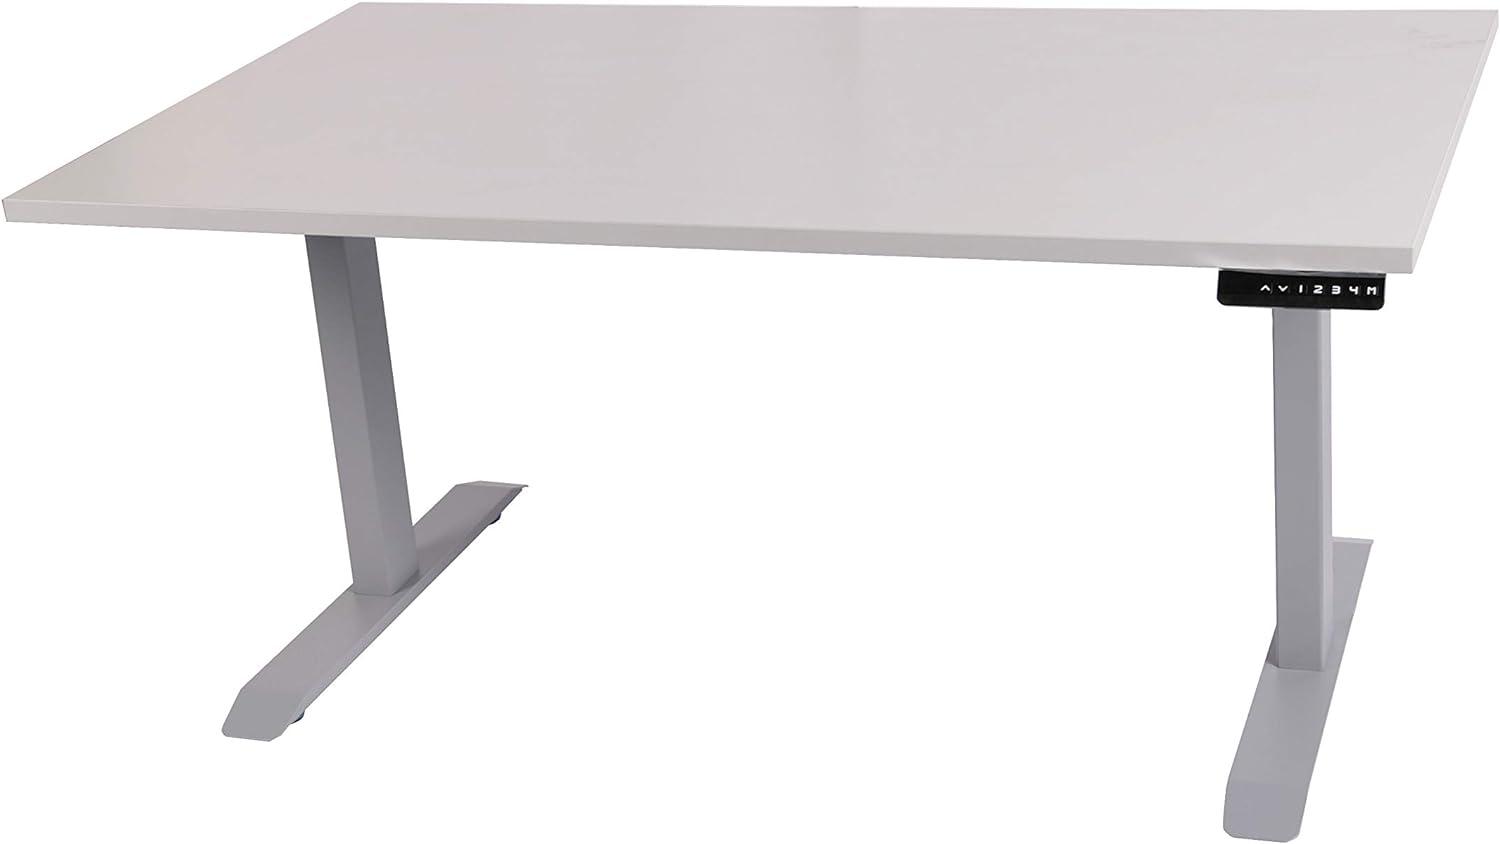 Szagato Schreibtisch stufenlos elektrisch höhenverstellbar BxTxH: 180x80x(64,5-129,5) cm lichtgrau, mit Memory-Funktion inkl. Tischplatte Stärke 2,5 cm (Stischgestell, Steh-Sitz Tisch) Bild 1